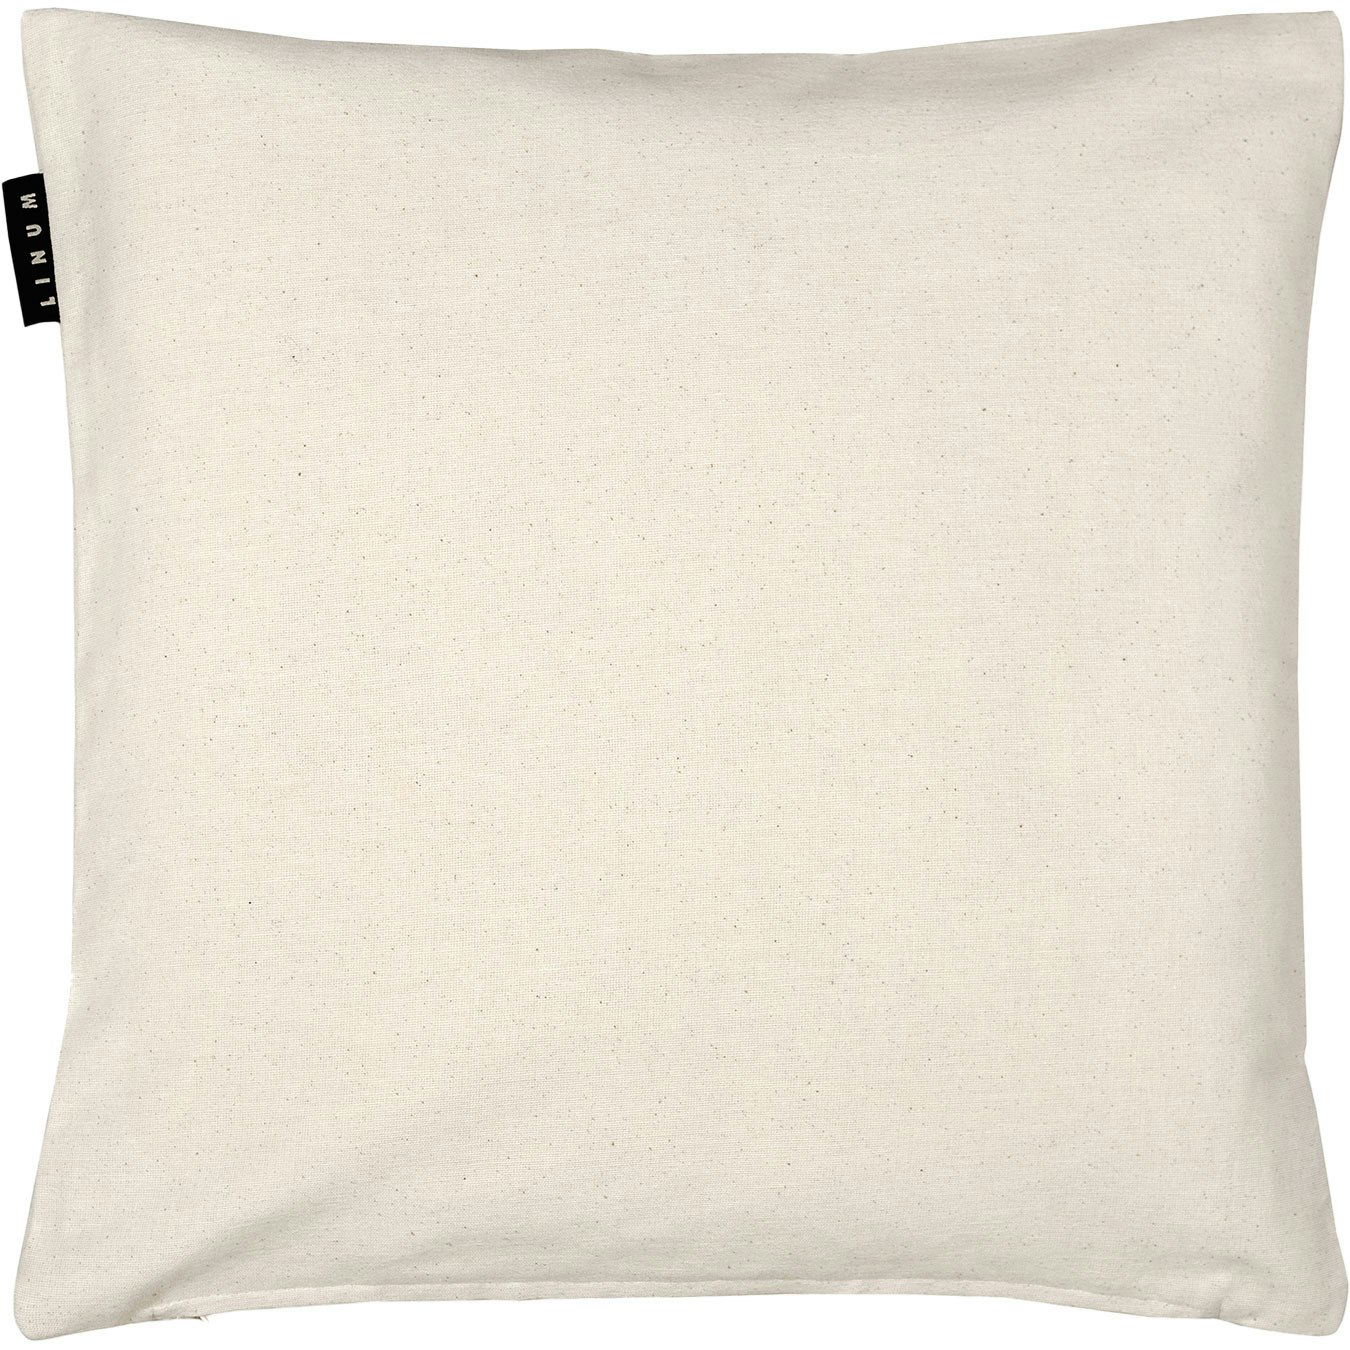 Annabelle Cushion Cover 40x40 cm, Cotton Beige